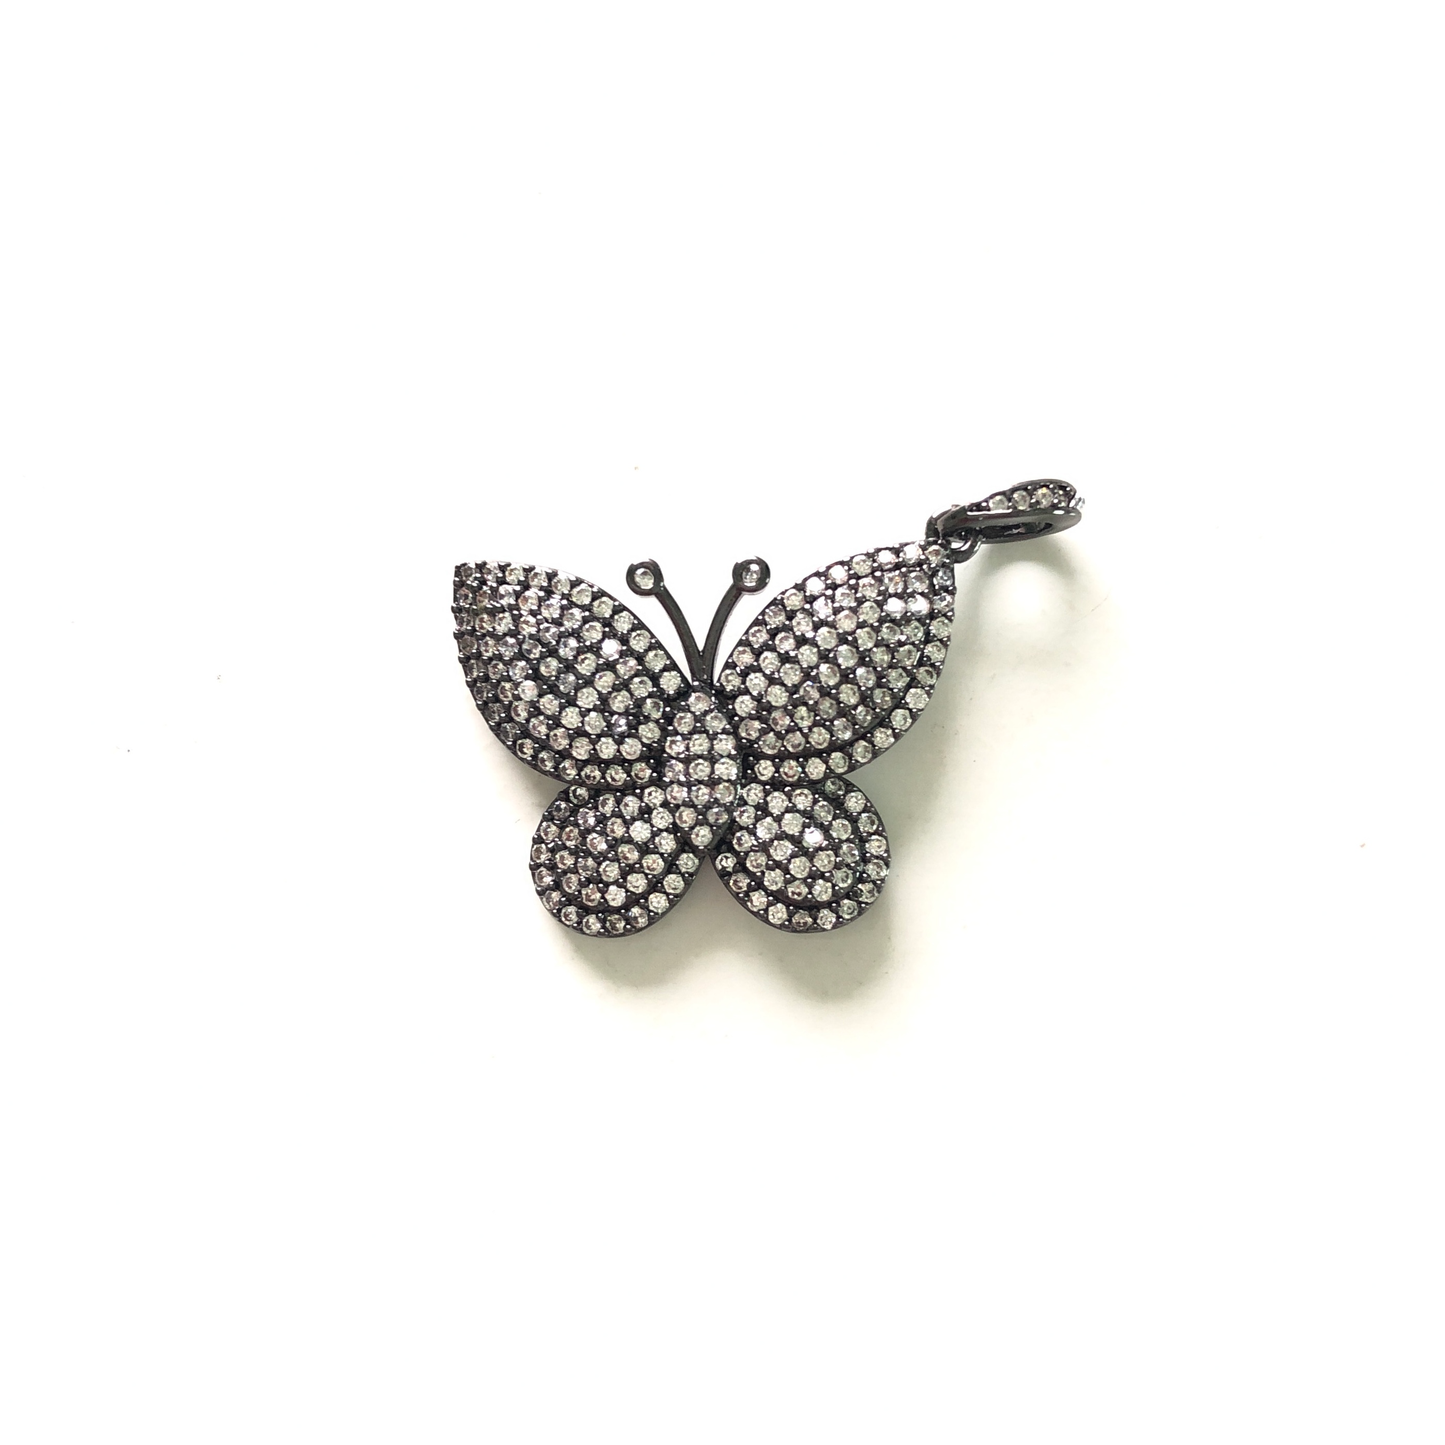 10pcs/lot 29.5*20mm CZ Paved Butterfly Charms Black CZ Paved Charms Butterflies On Sale Charms Beads Beyond